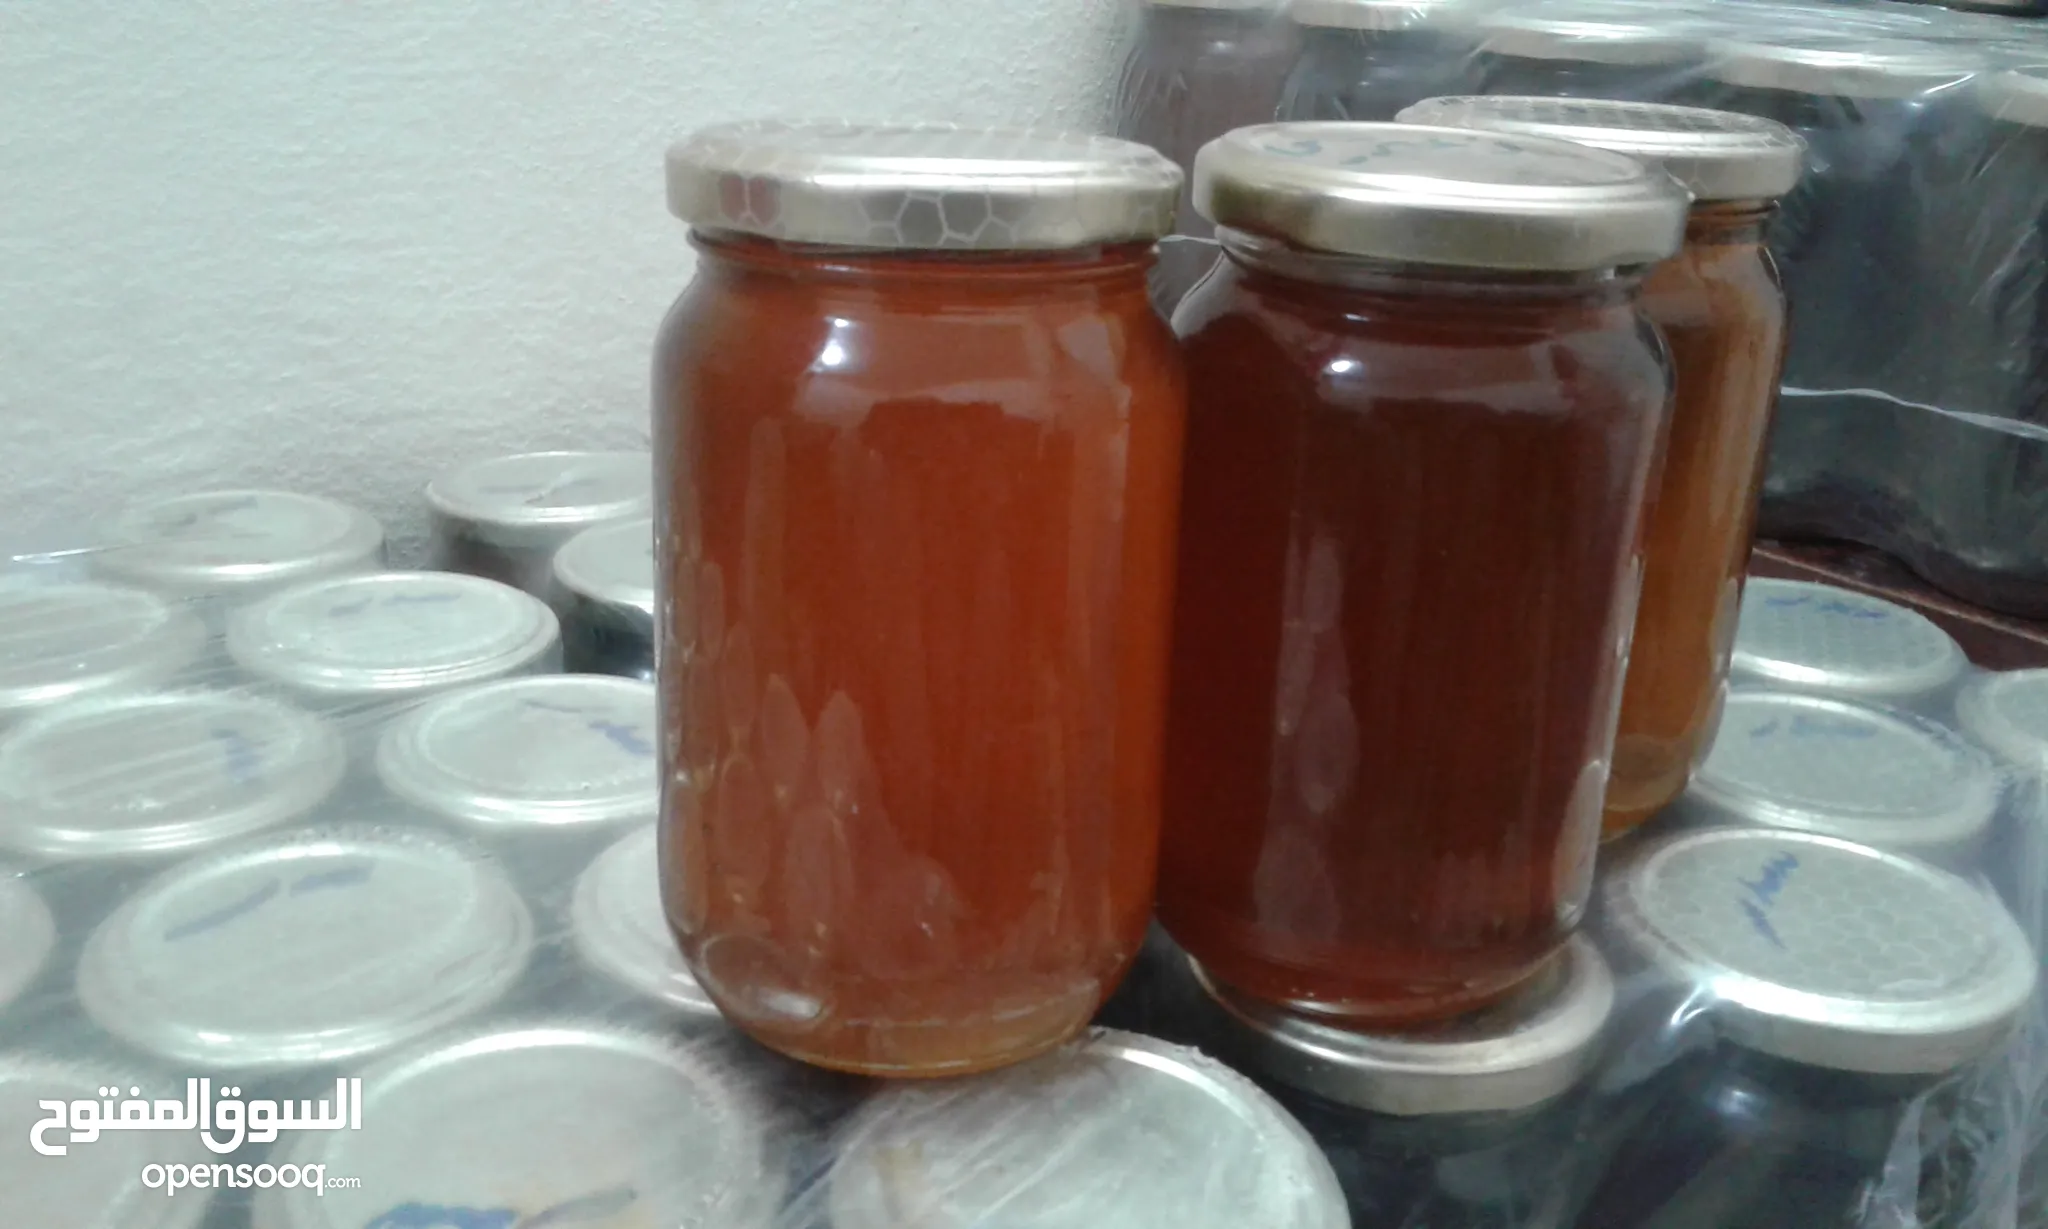 أفضل انواع العسل للبيع في ليبيا | السوق المفتوح